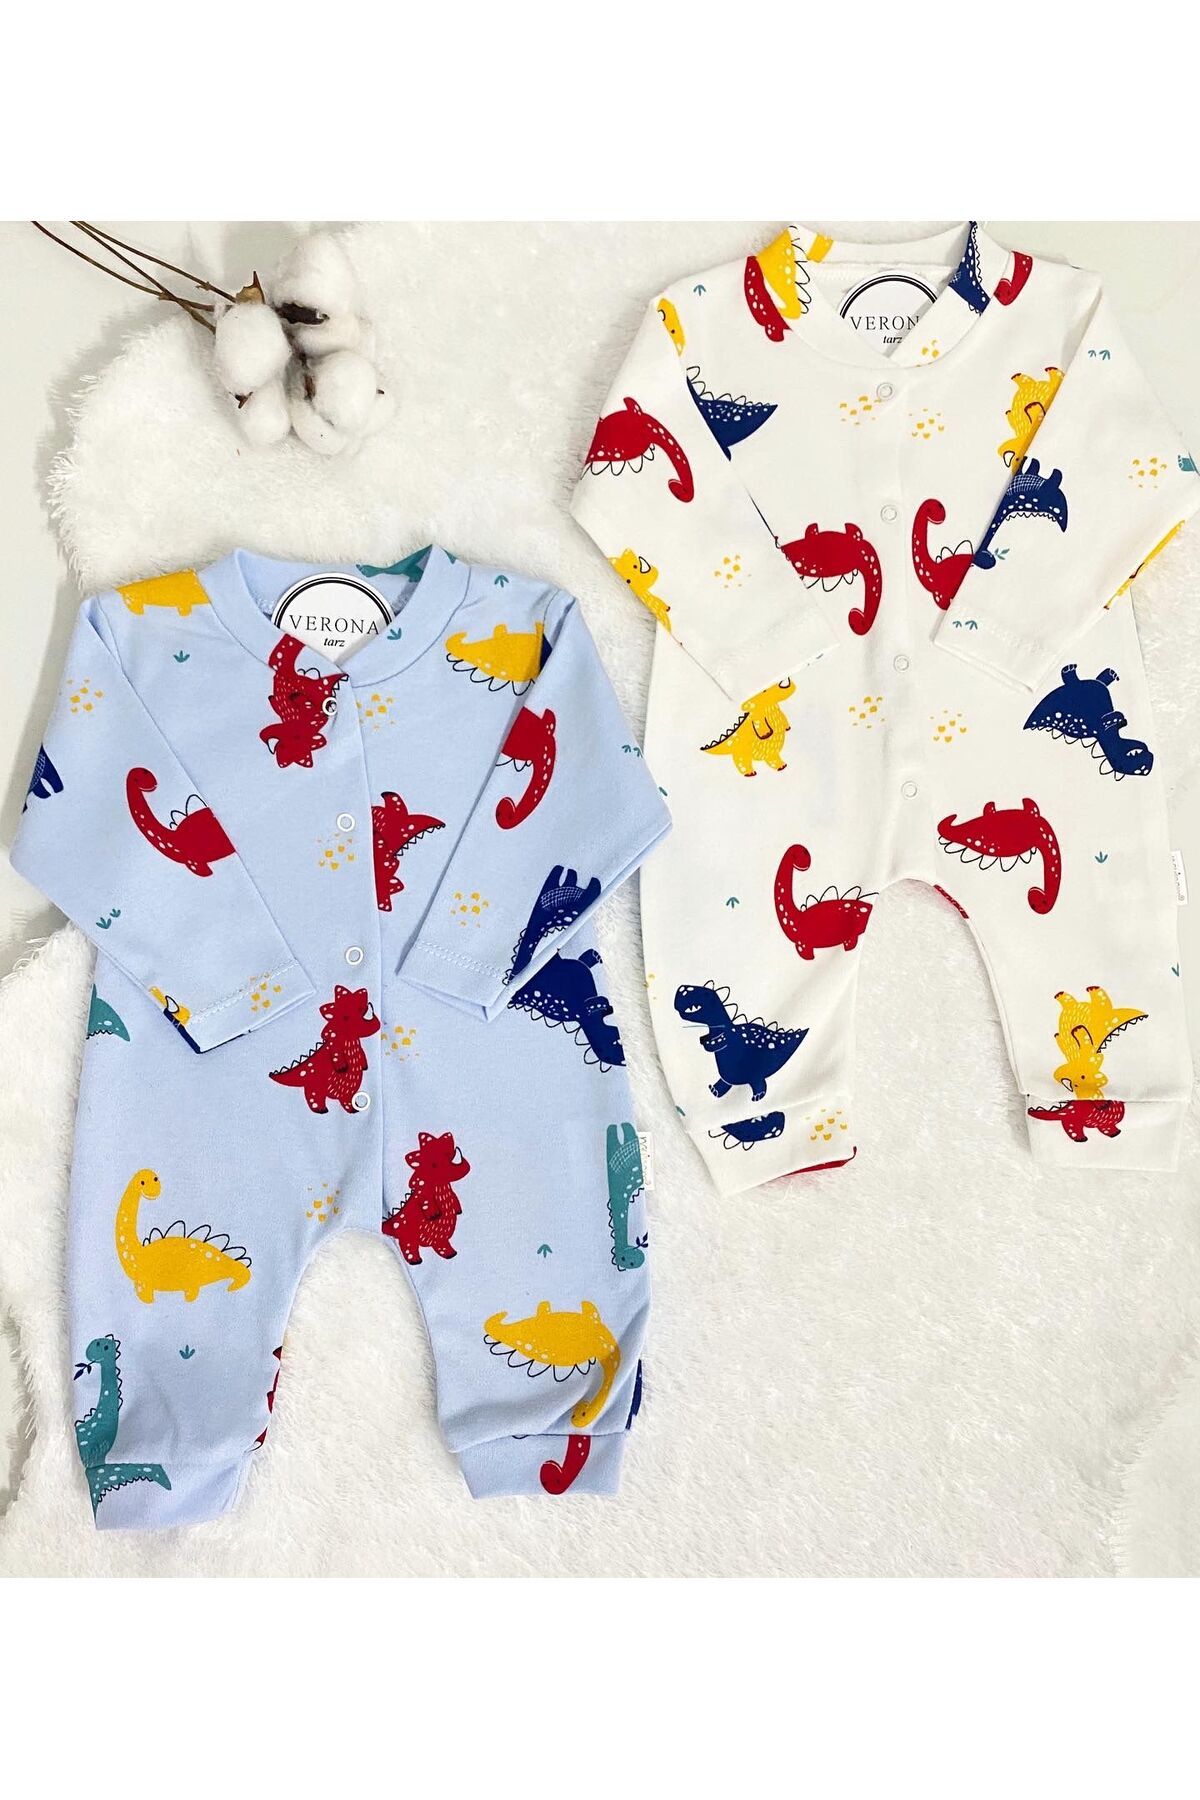 VERONA TARZ Erkek Bebek Ayıcık Desenli 2li Tulum Takımı Yenidoğan Kıyafeti